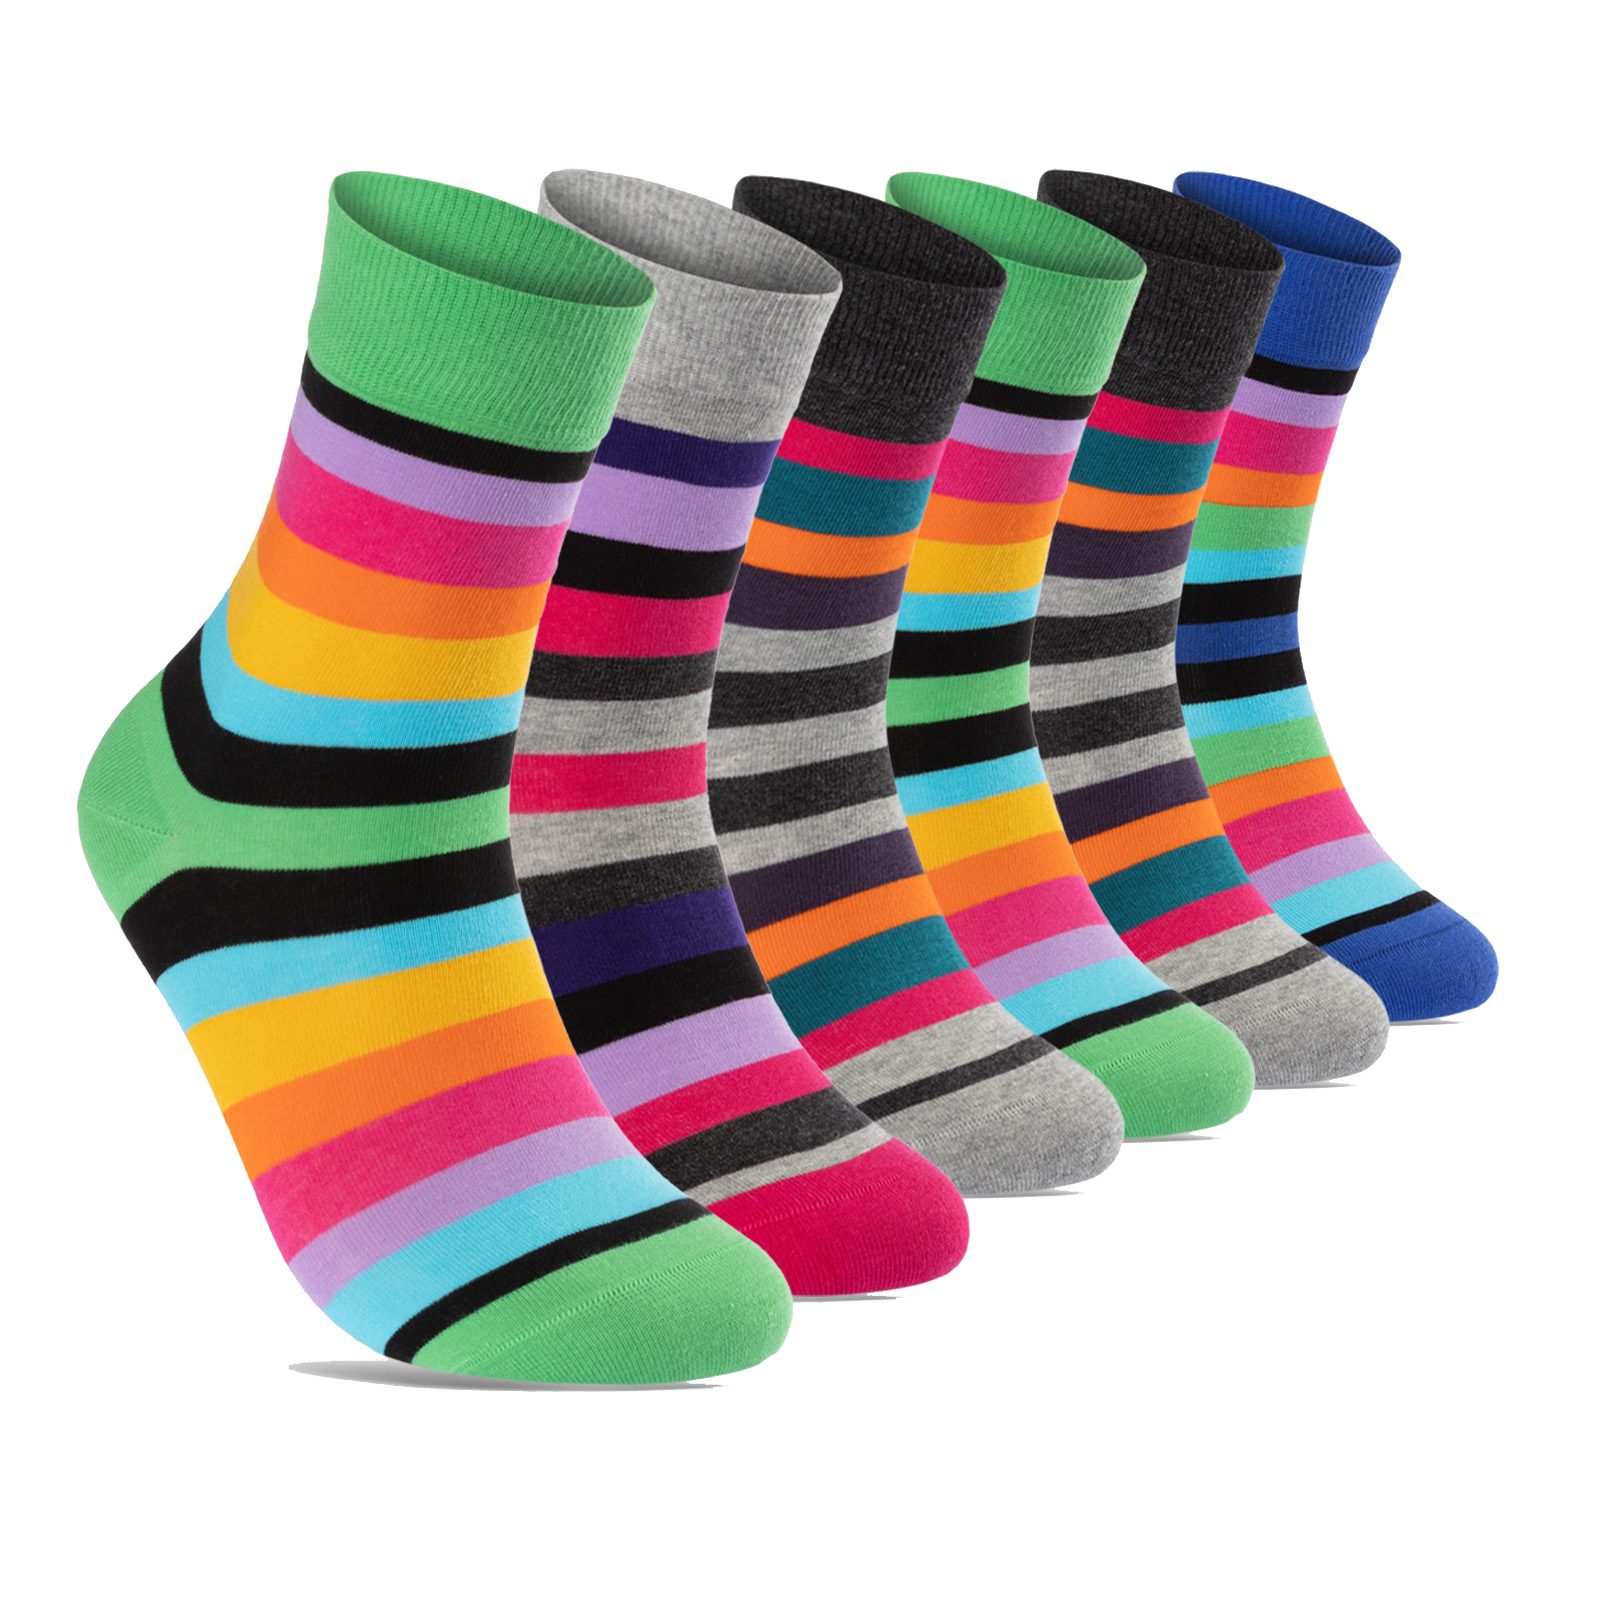 39-42) Naht WP Basicsocken Socken - Ringel 12 6 Paar sockenkauf24 (6-Paar, 11979 Damen oder Komfortbund ohne Bunt Baumwolle